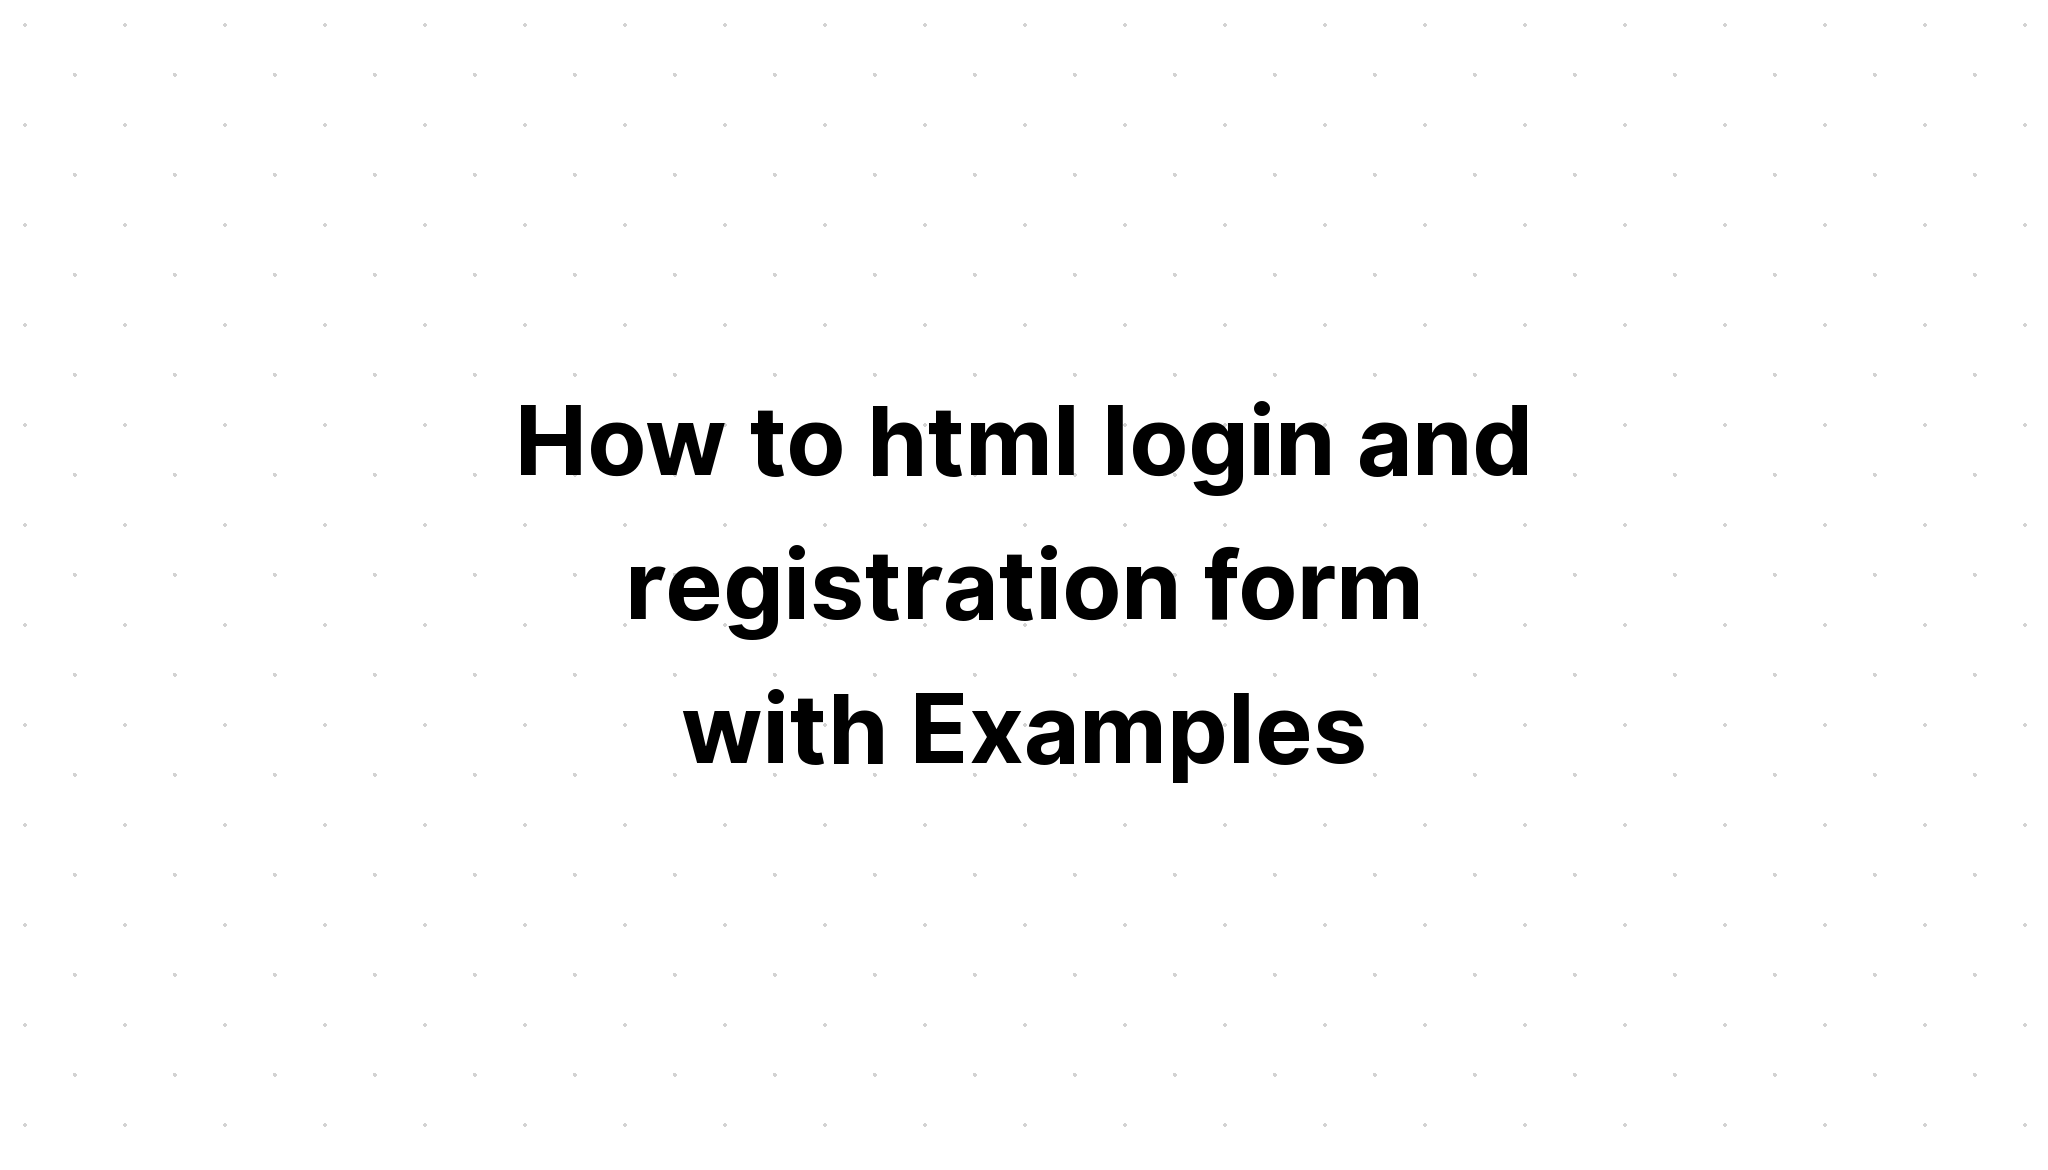 Cách đăng nhập và đăng ký html với các ví dụ